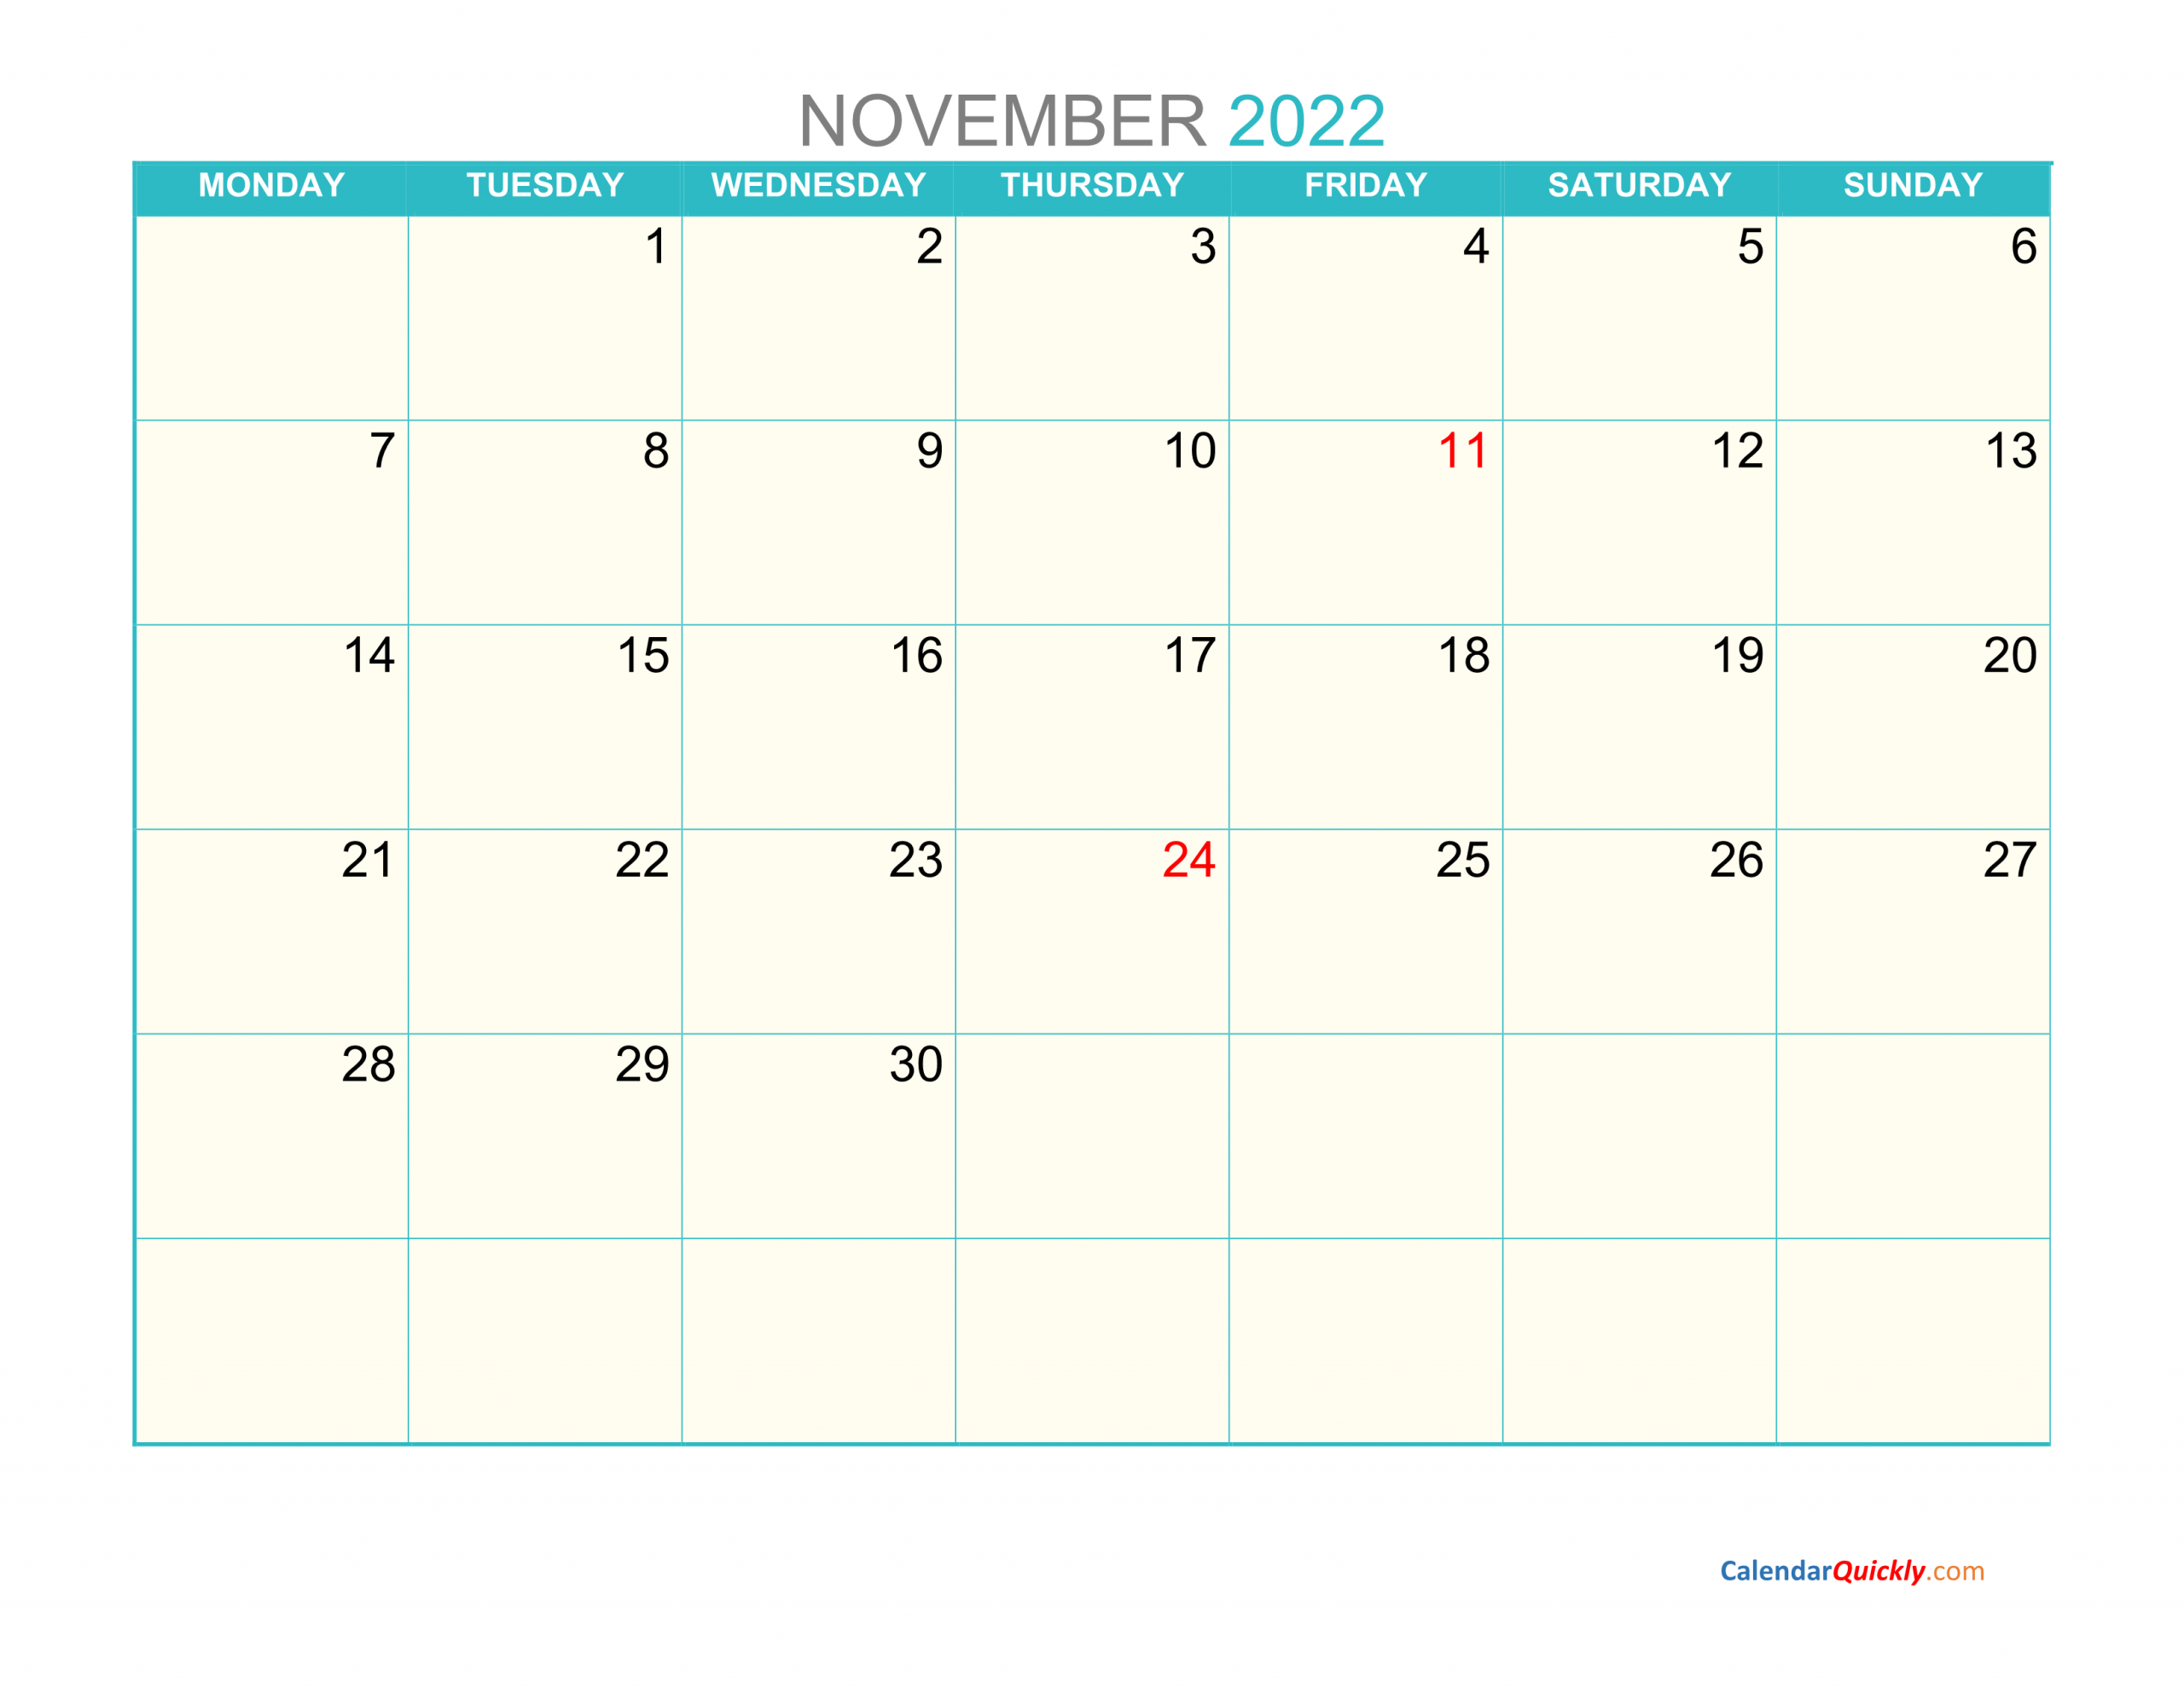 November Monday 2022 Calendar Printable | Calendar Quickly